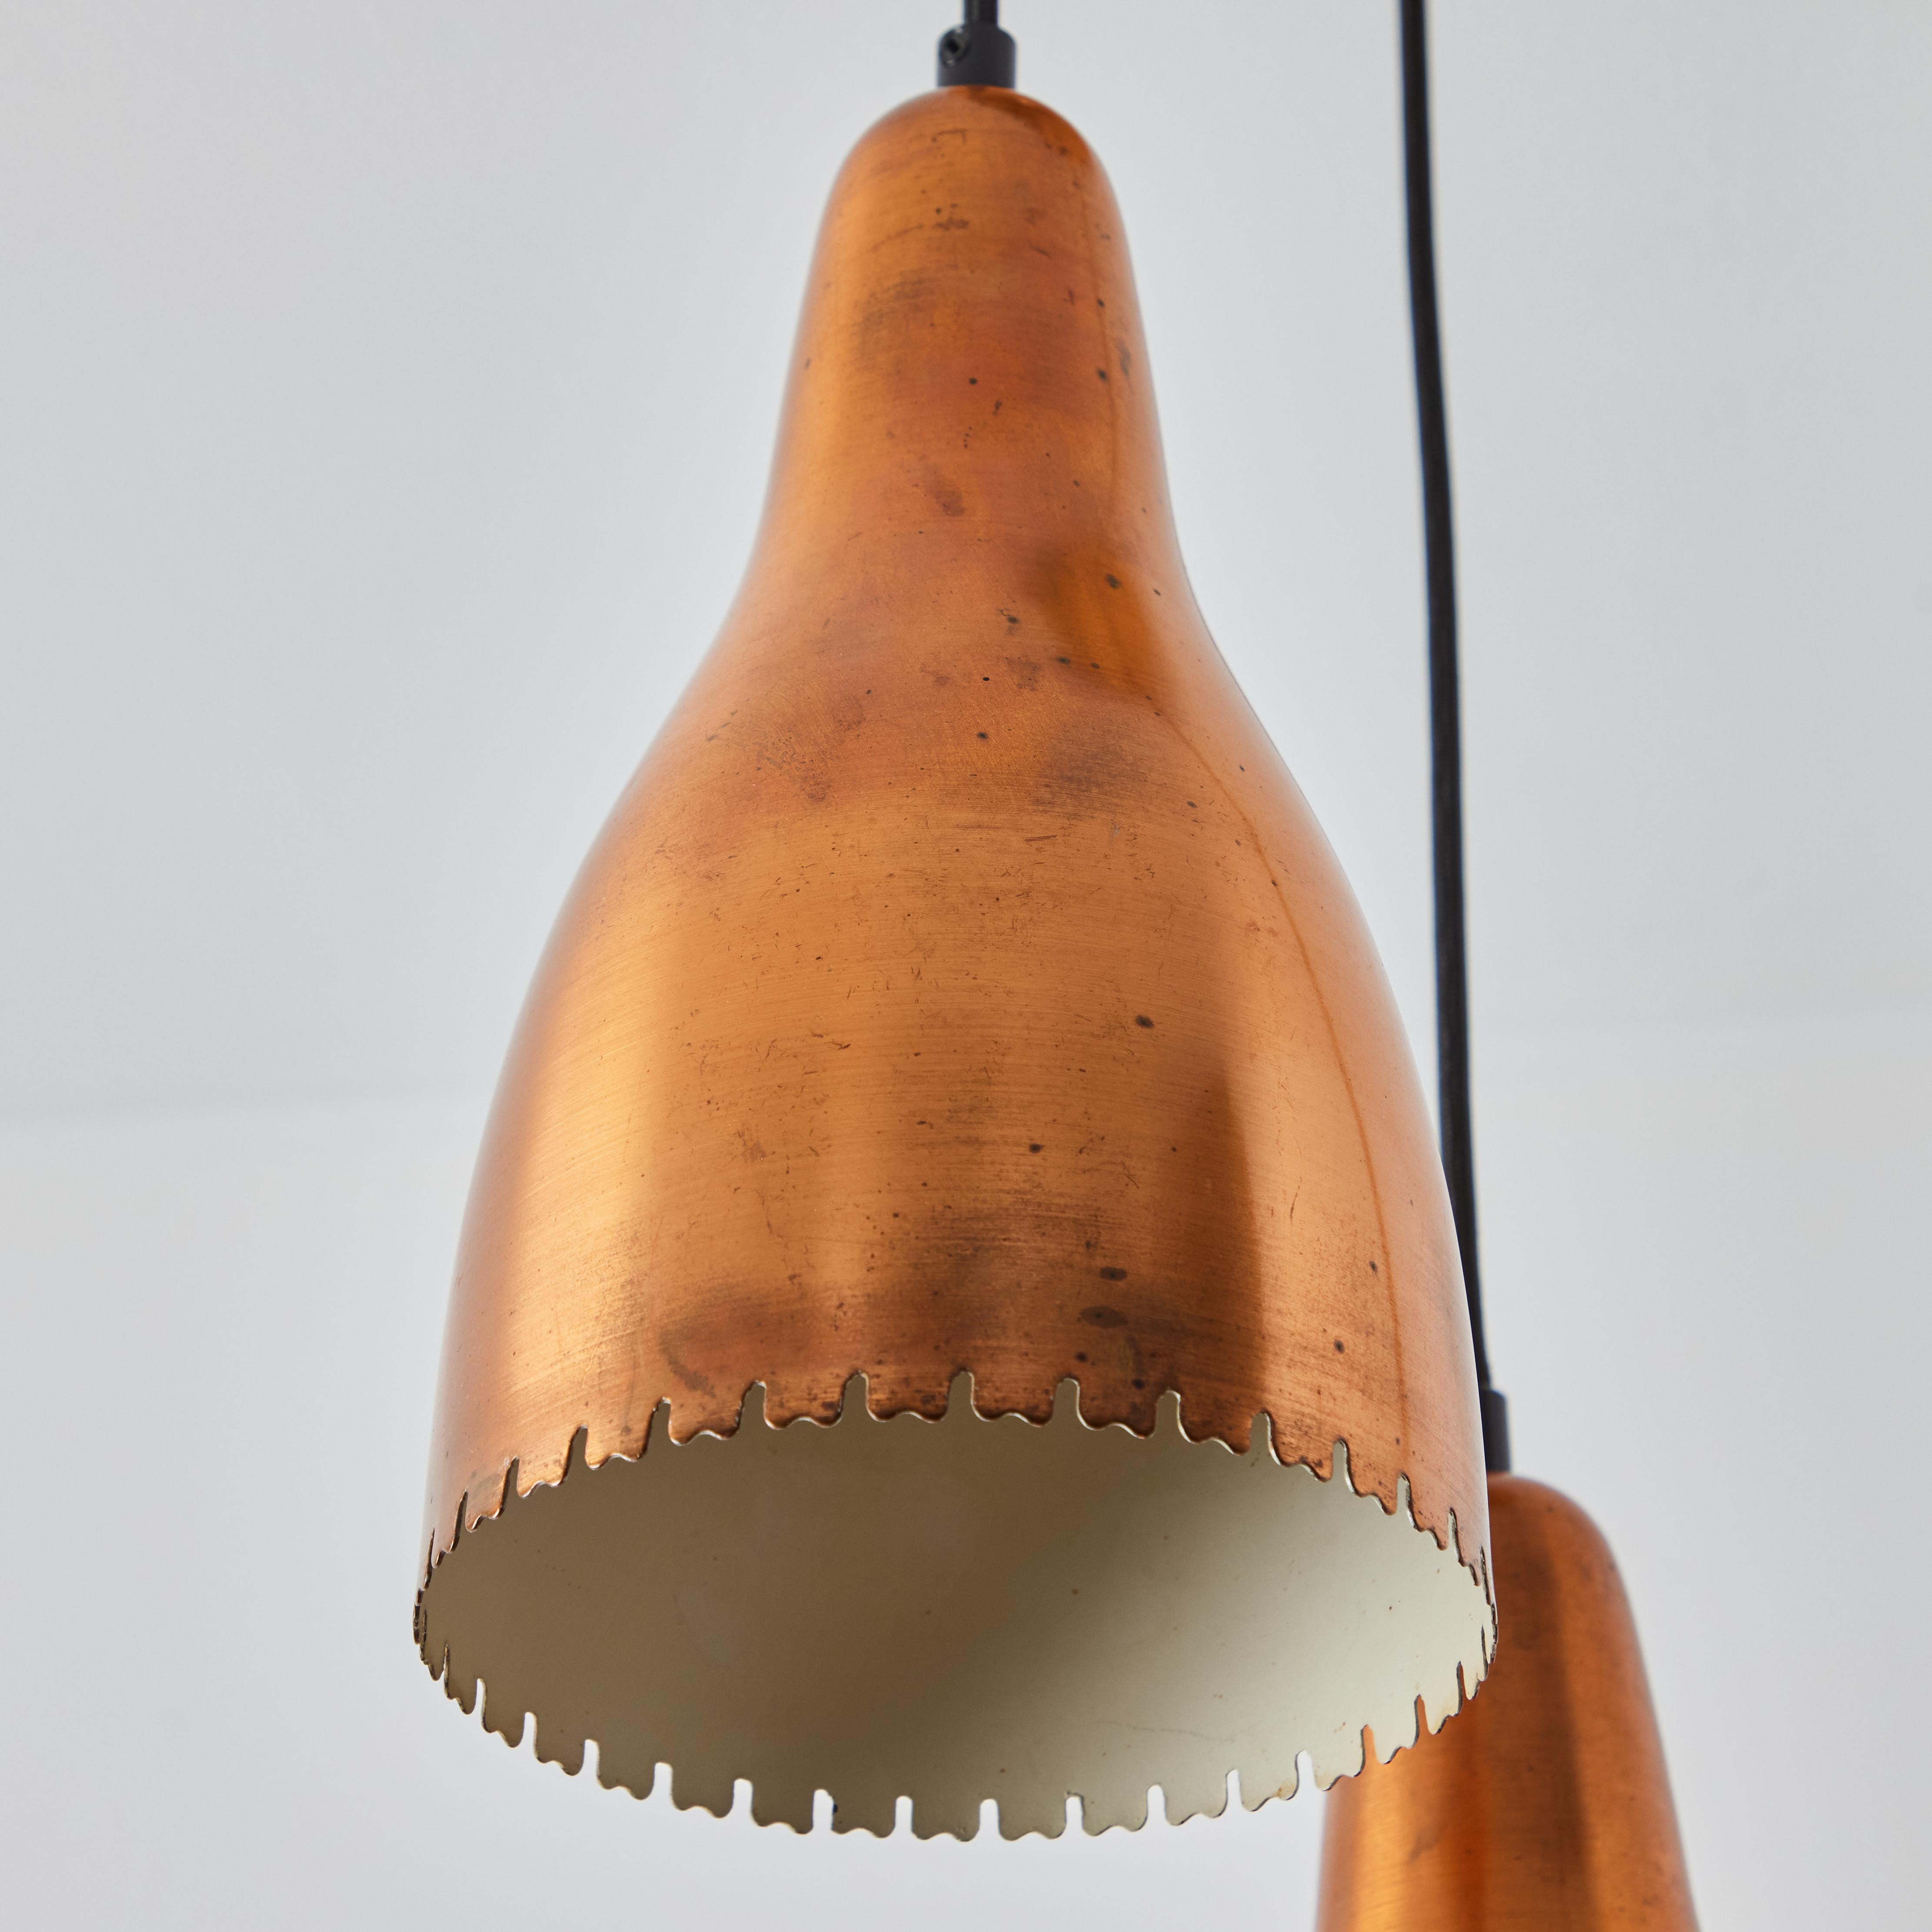 Lustre à 3 abat-jour en cuivre Bent Karlby des années 1950 pour Lyfa. Exécuté dans des teintes de cuivre architecturées et élégamment façonnées avec une patine attrayante, Danemark, vers les années 1950. Un lustre de la quintessence de la modernité